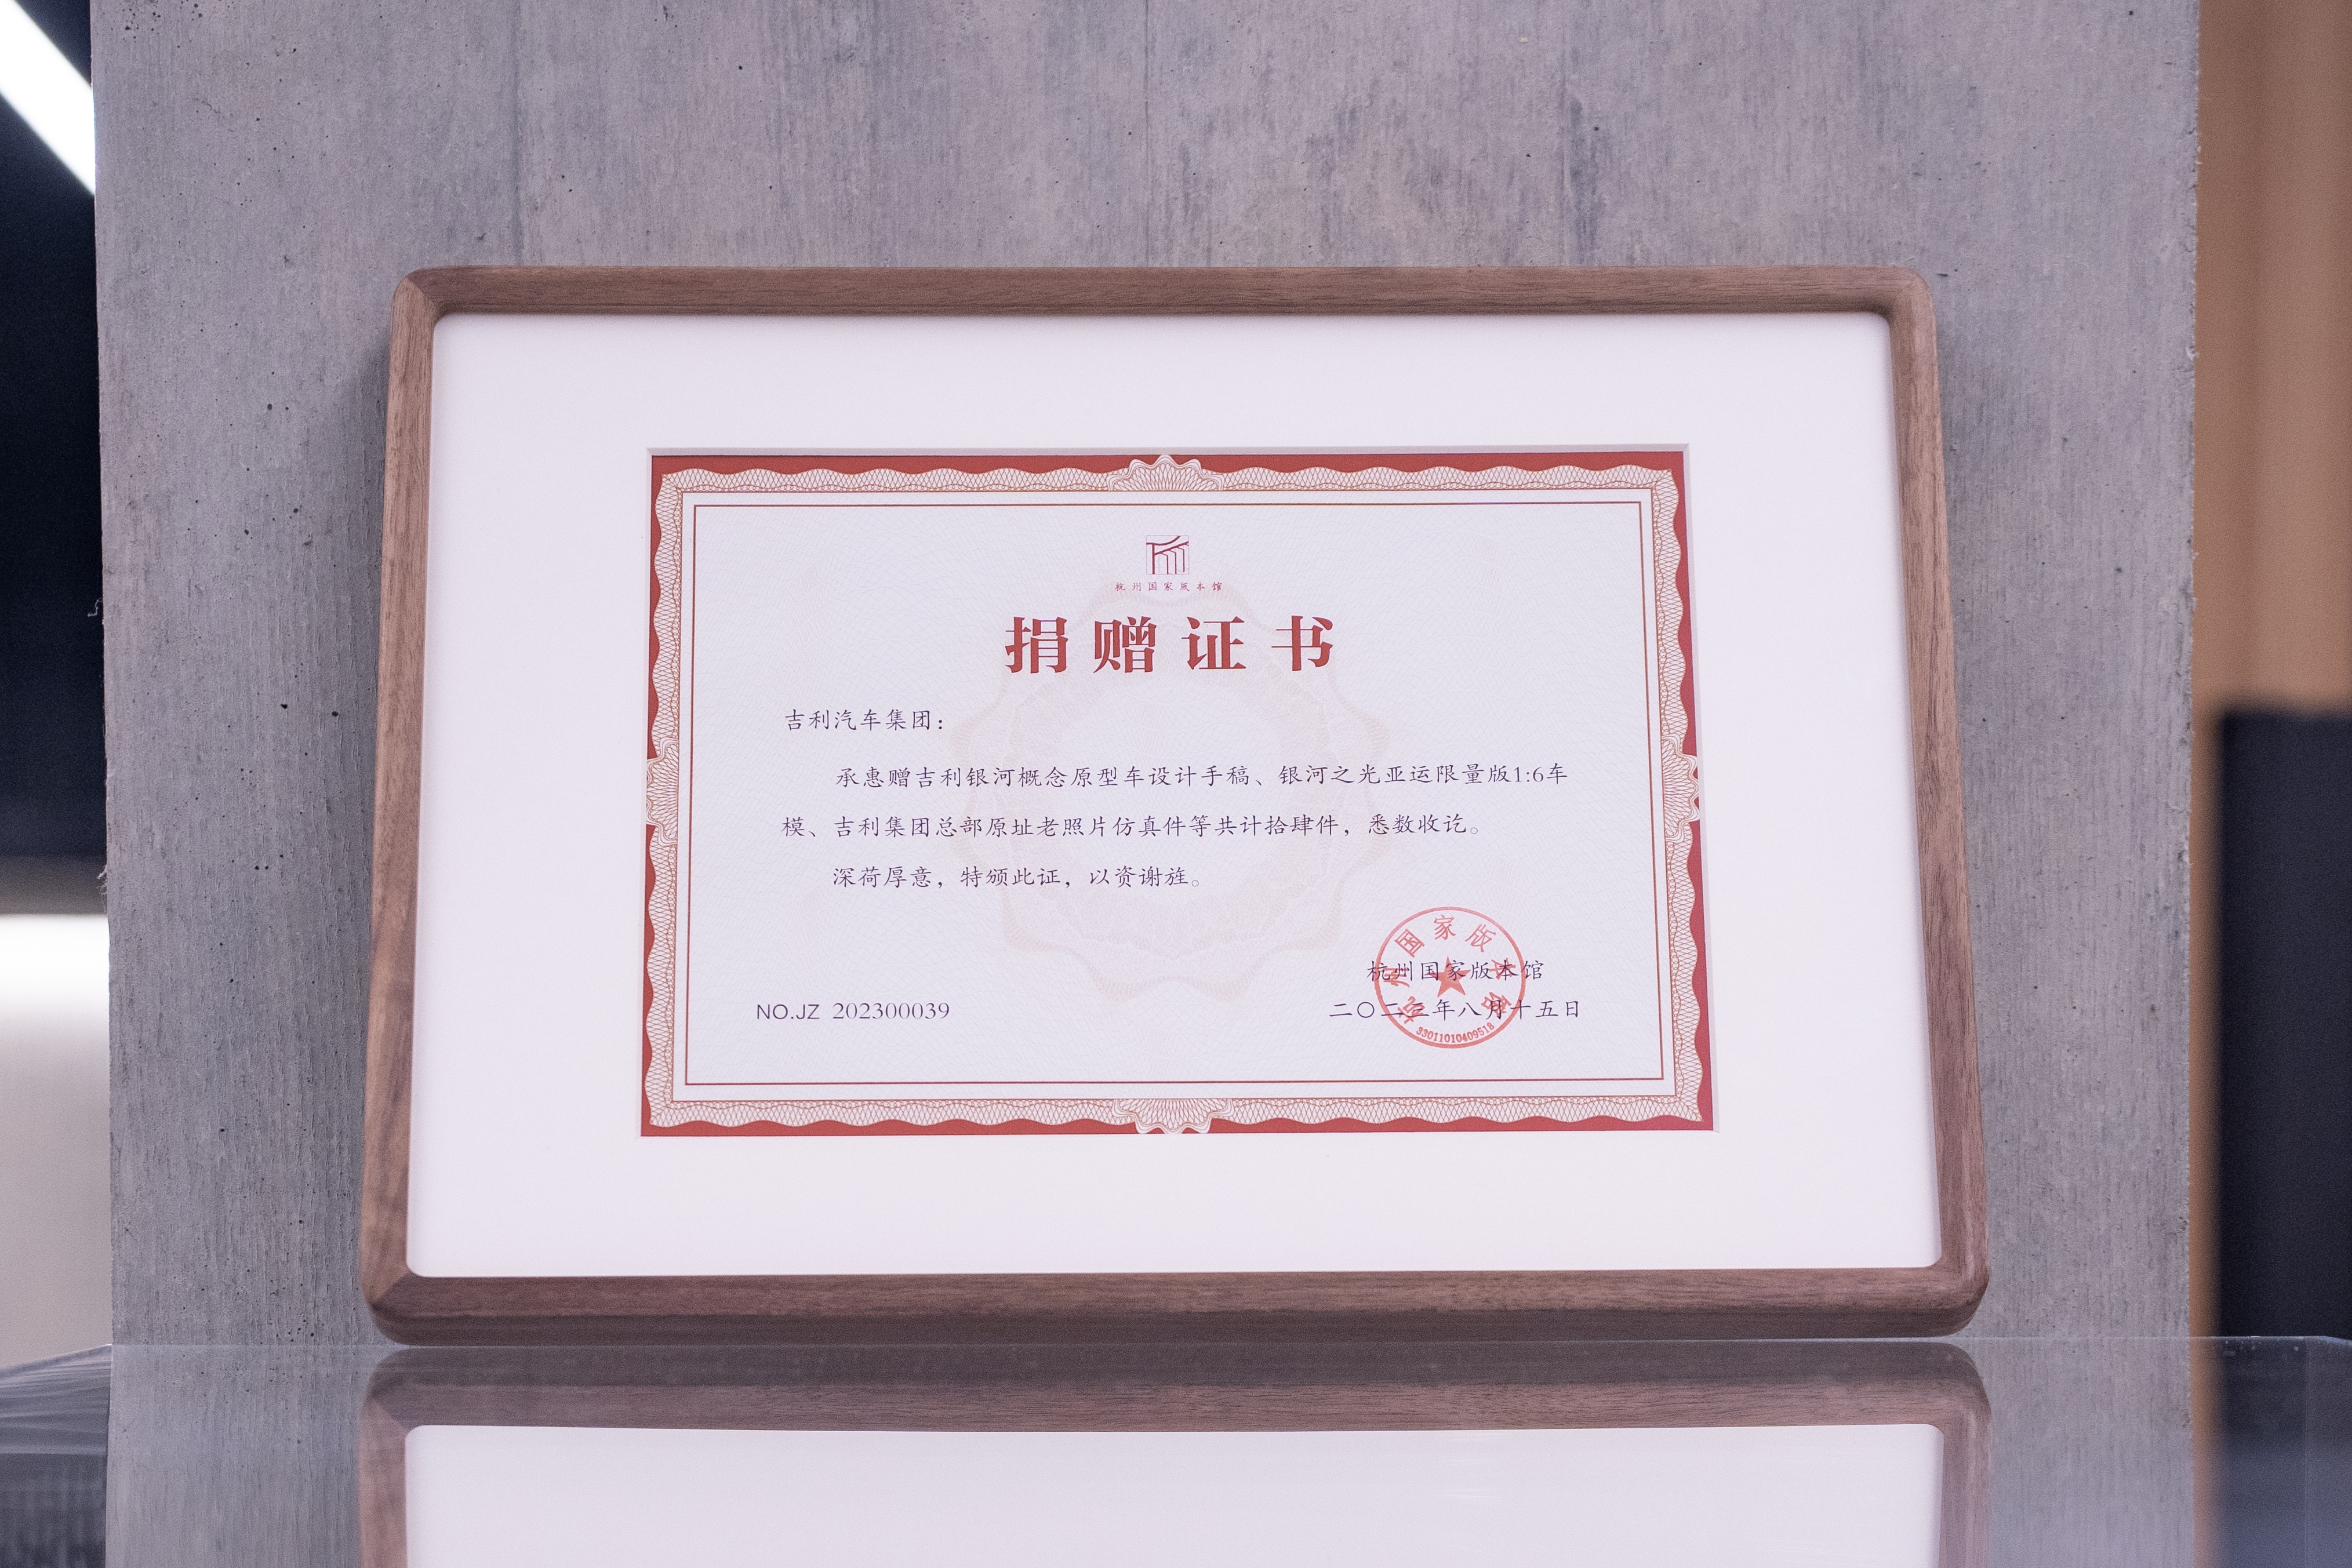 原创汽车设计首次录入杭州国家版本馆 中国电车设计彰显中华文化自信